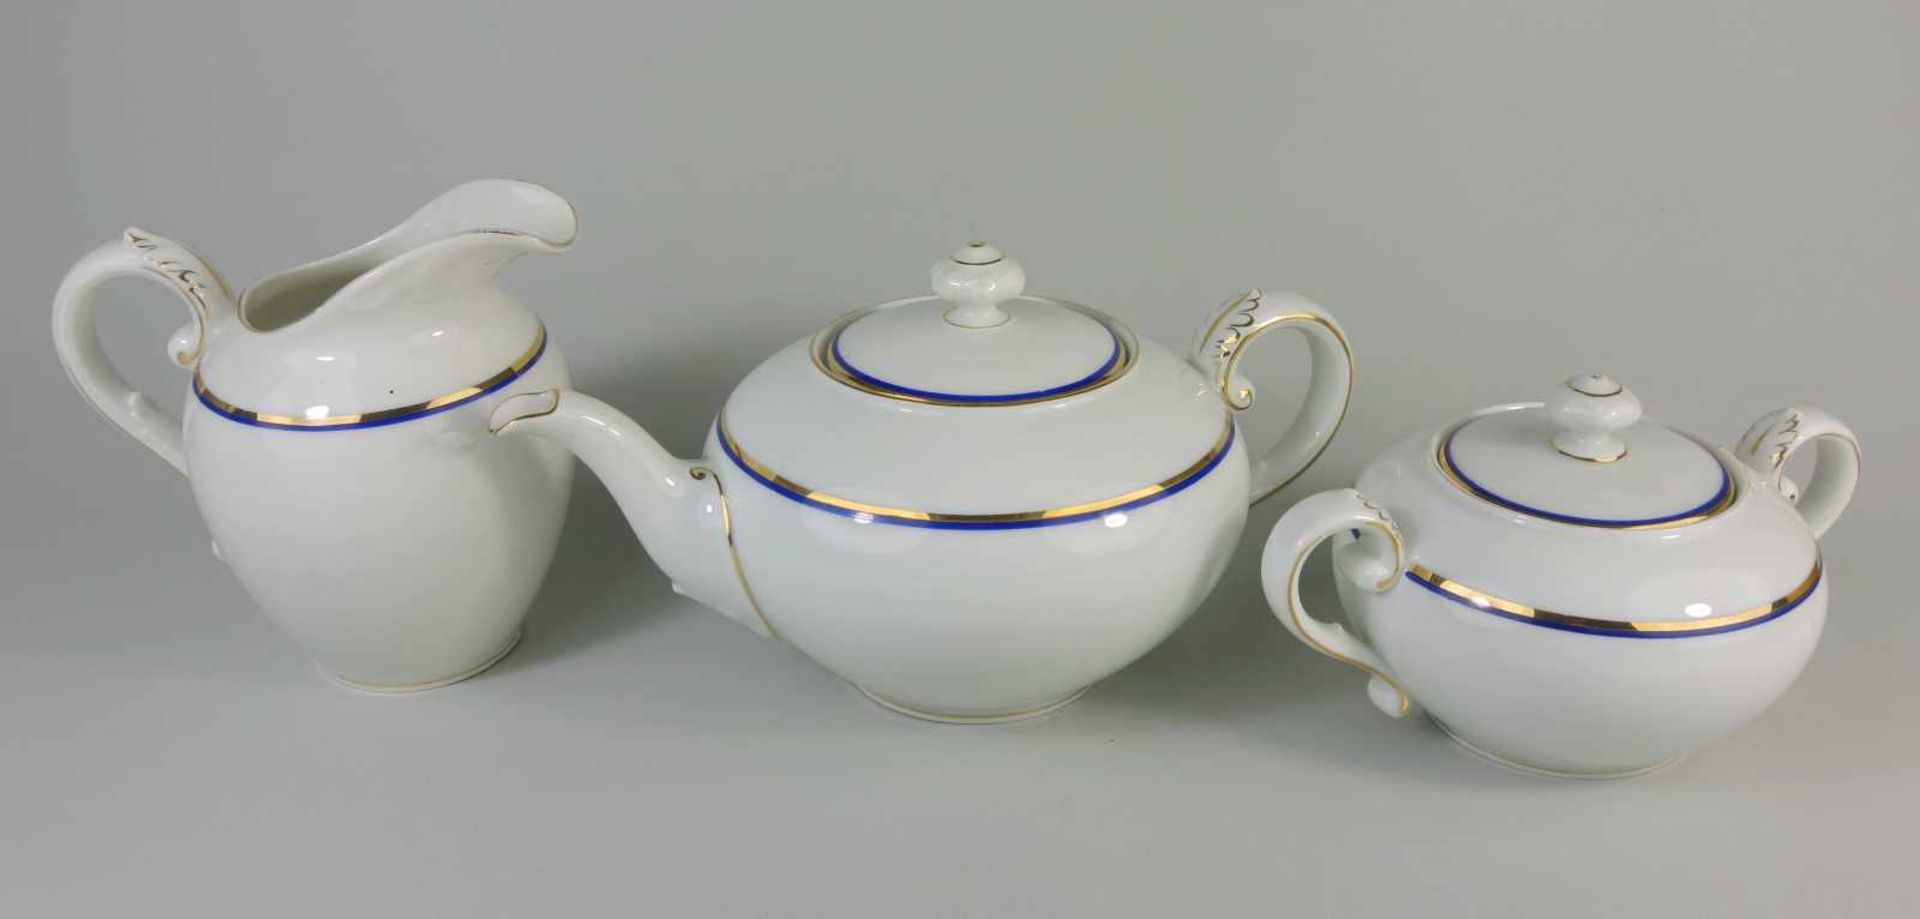 3-tlg. Tee-Kernstück, Rosenthal, Form Elite, 20er JahreModell von Ph.Rosenthal, weiß, blaue und